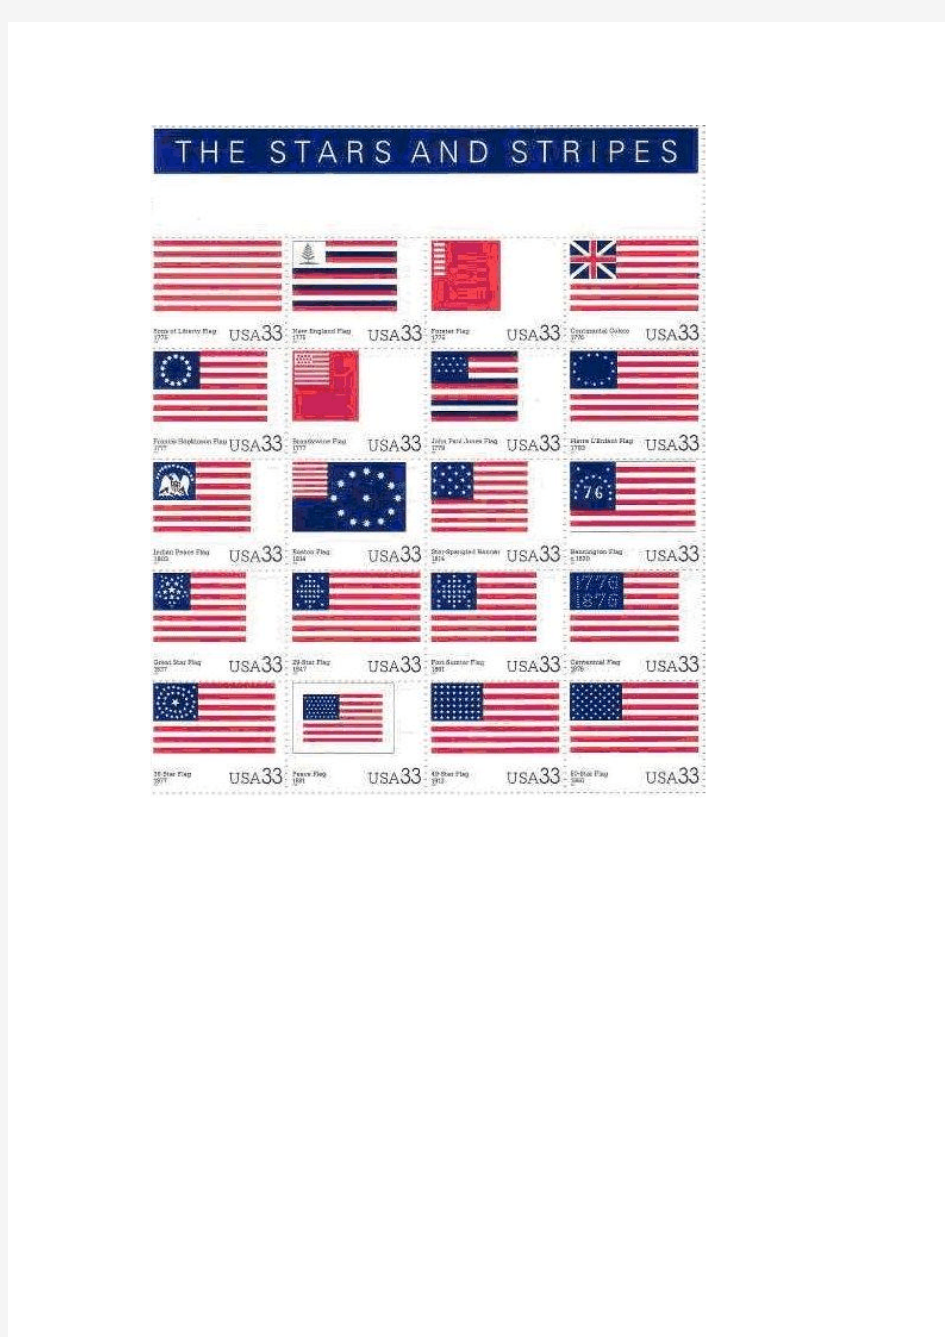 美国国旗的发展演变